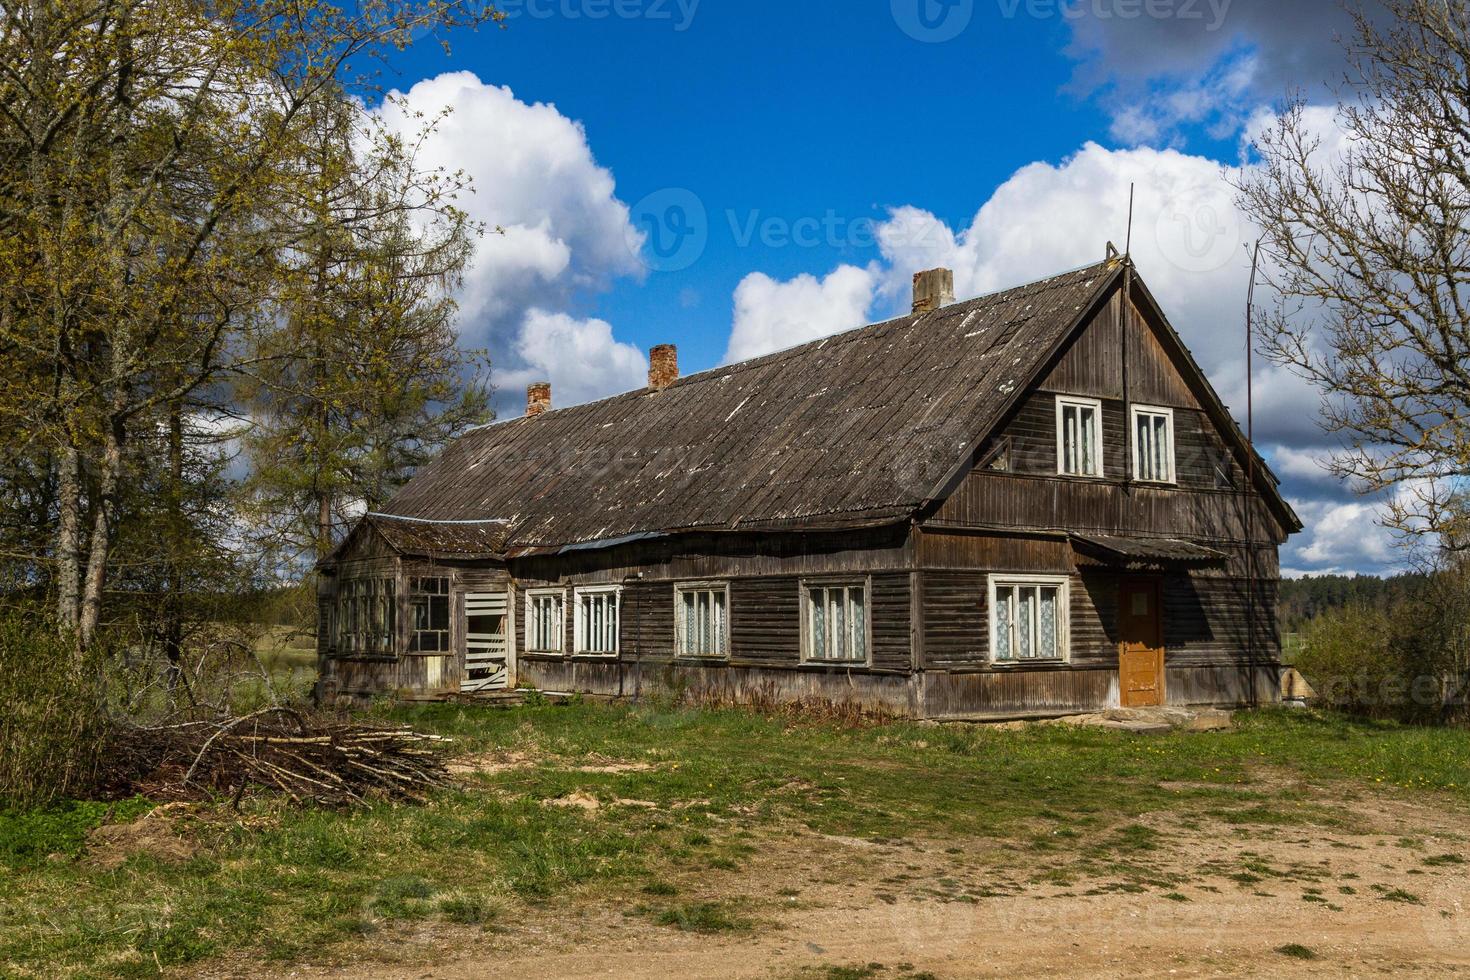 paysages de la campagne lituanienne au printemps photo